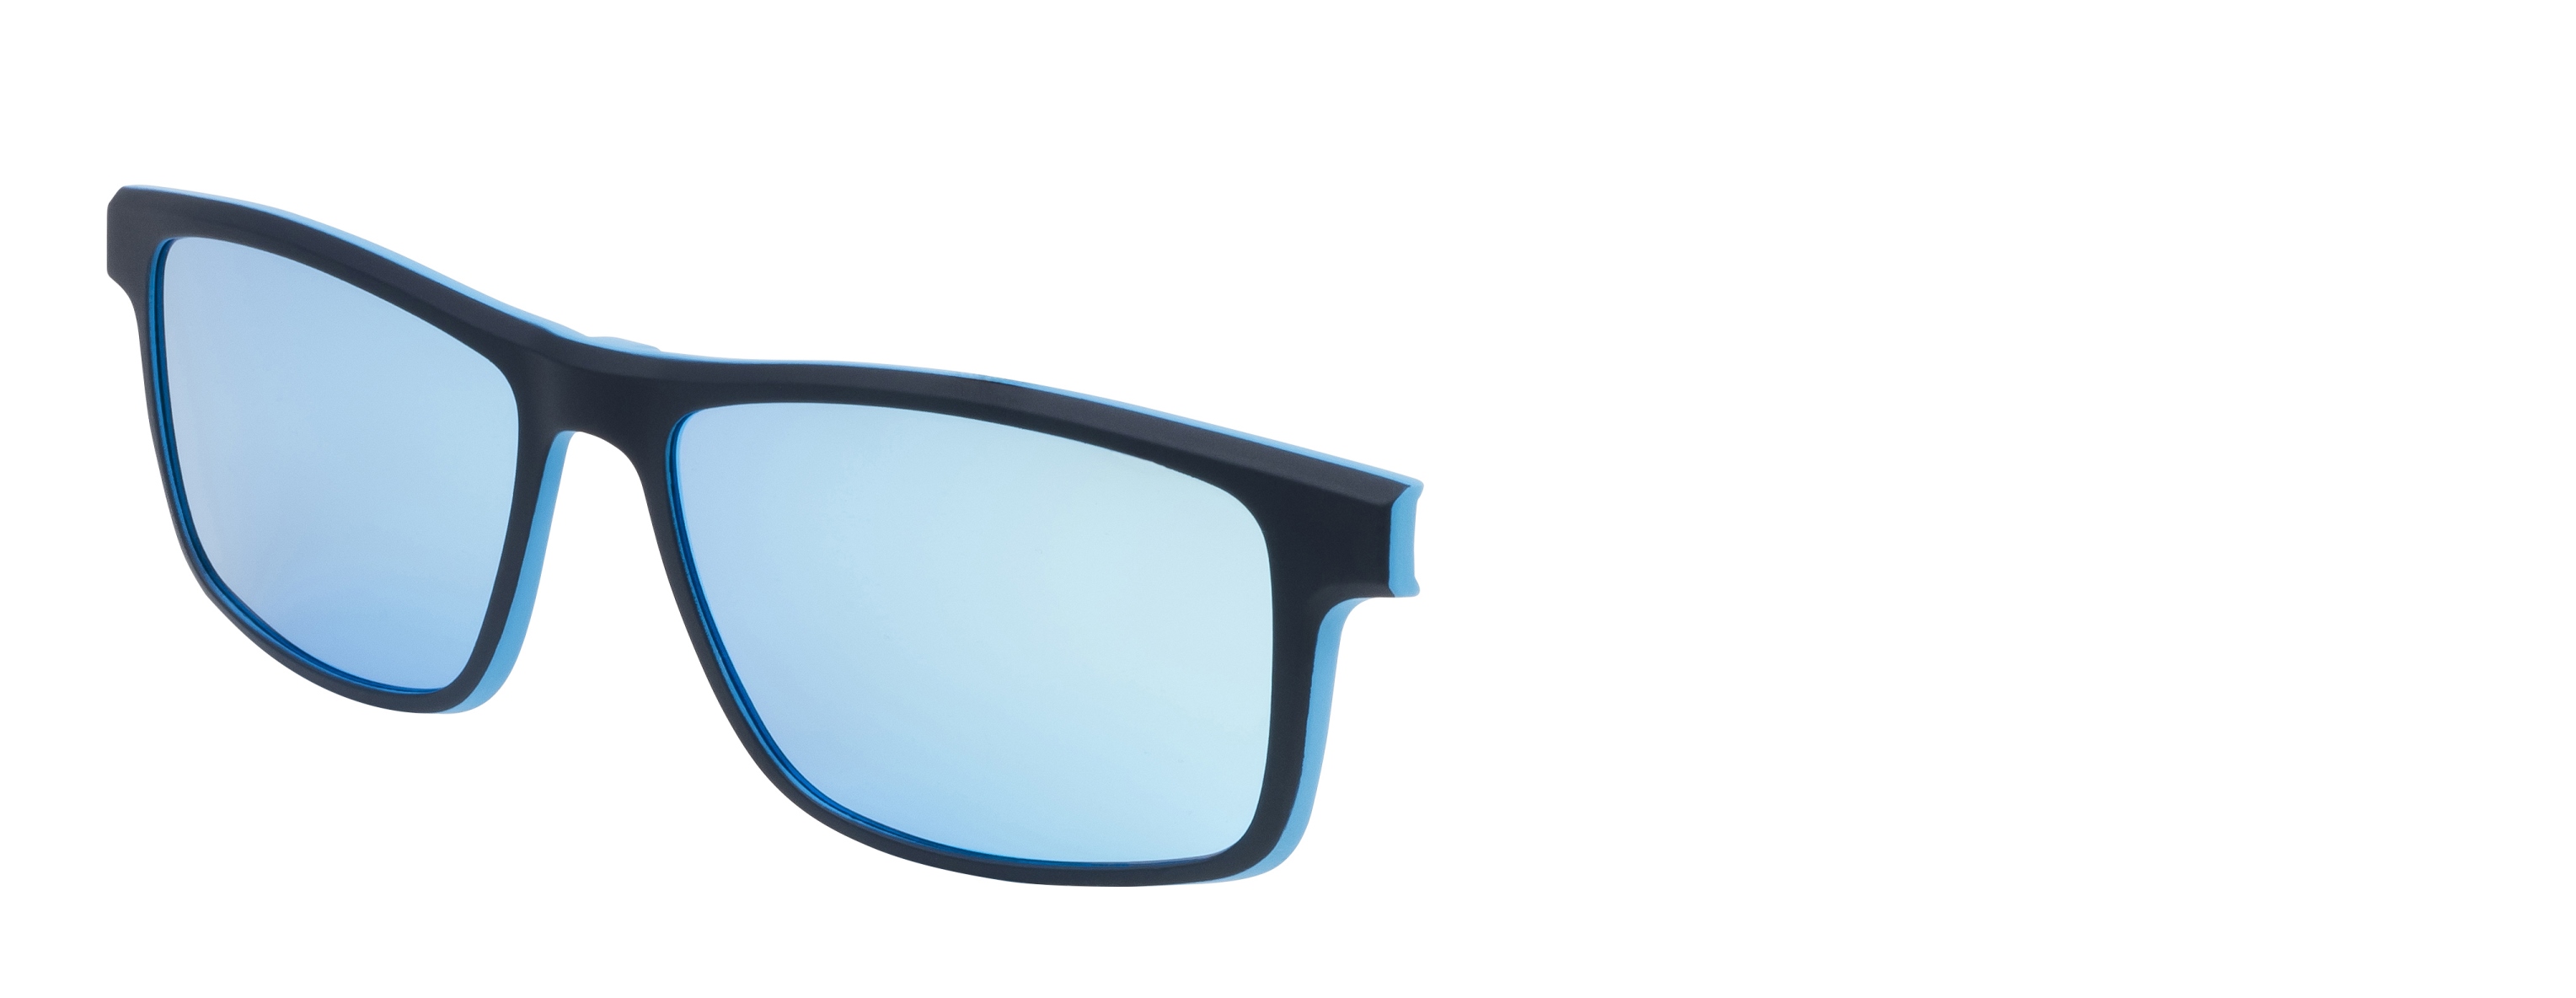 Náhradní dioptrický klip k brýlím Relax  Bern RM135C2clip -